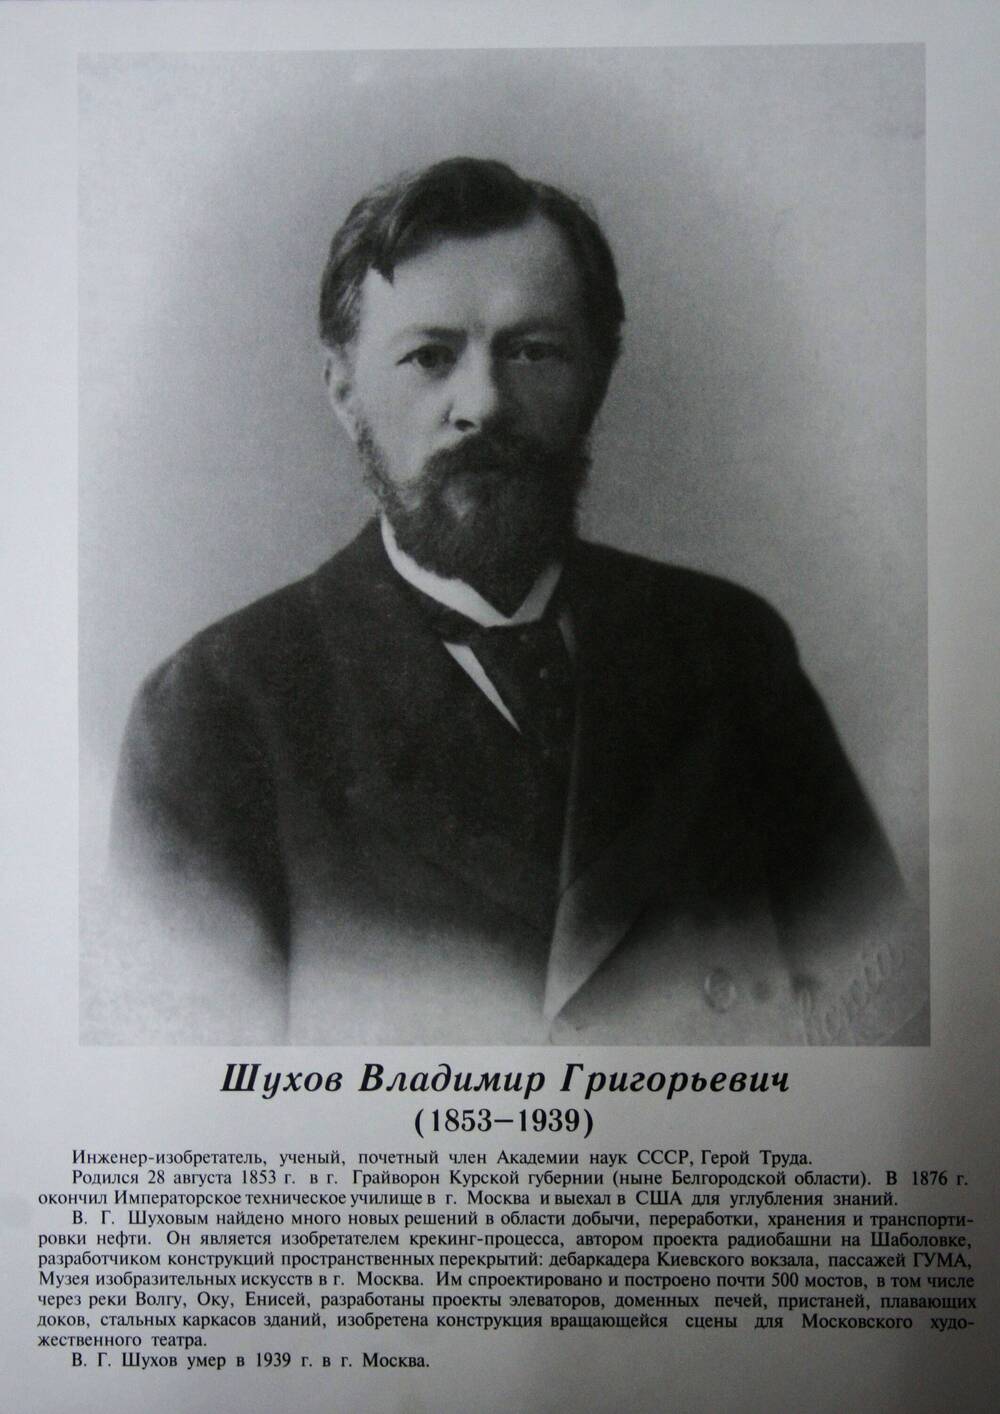 Плакат (фотопортрет) из комплекта Галерея славных имен Белгородчины. Шухов Владимир Григорьевич (1853-1939).